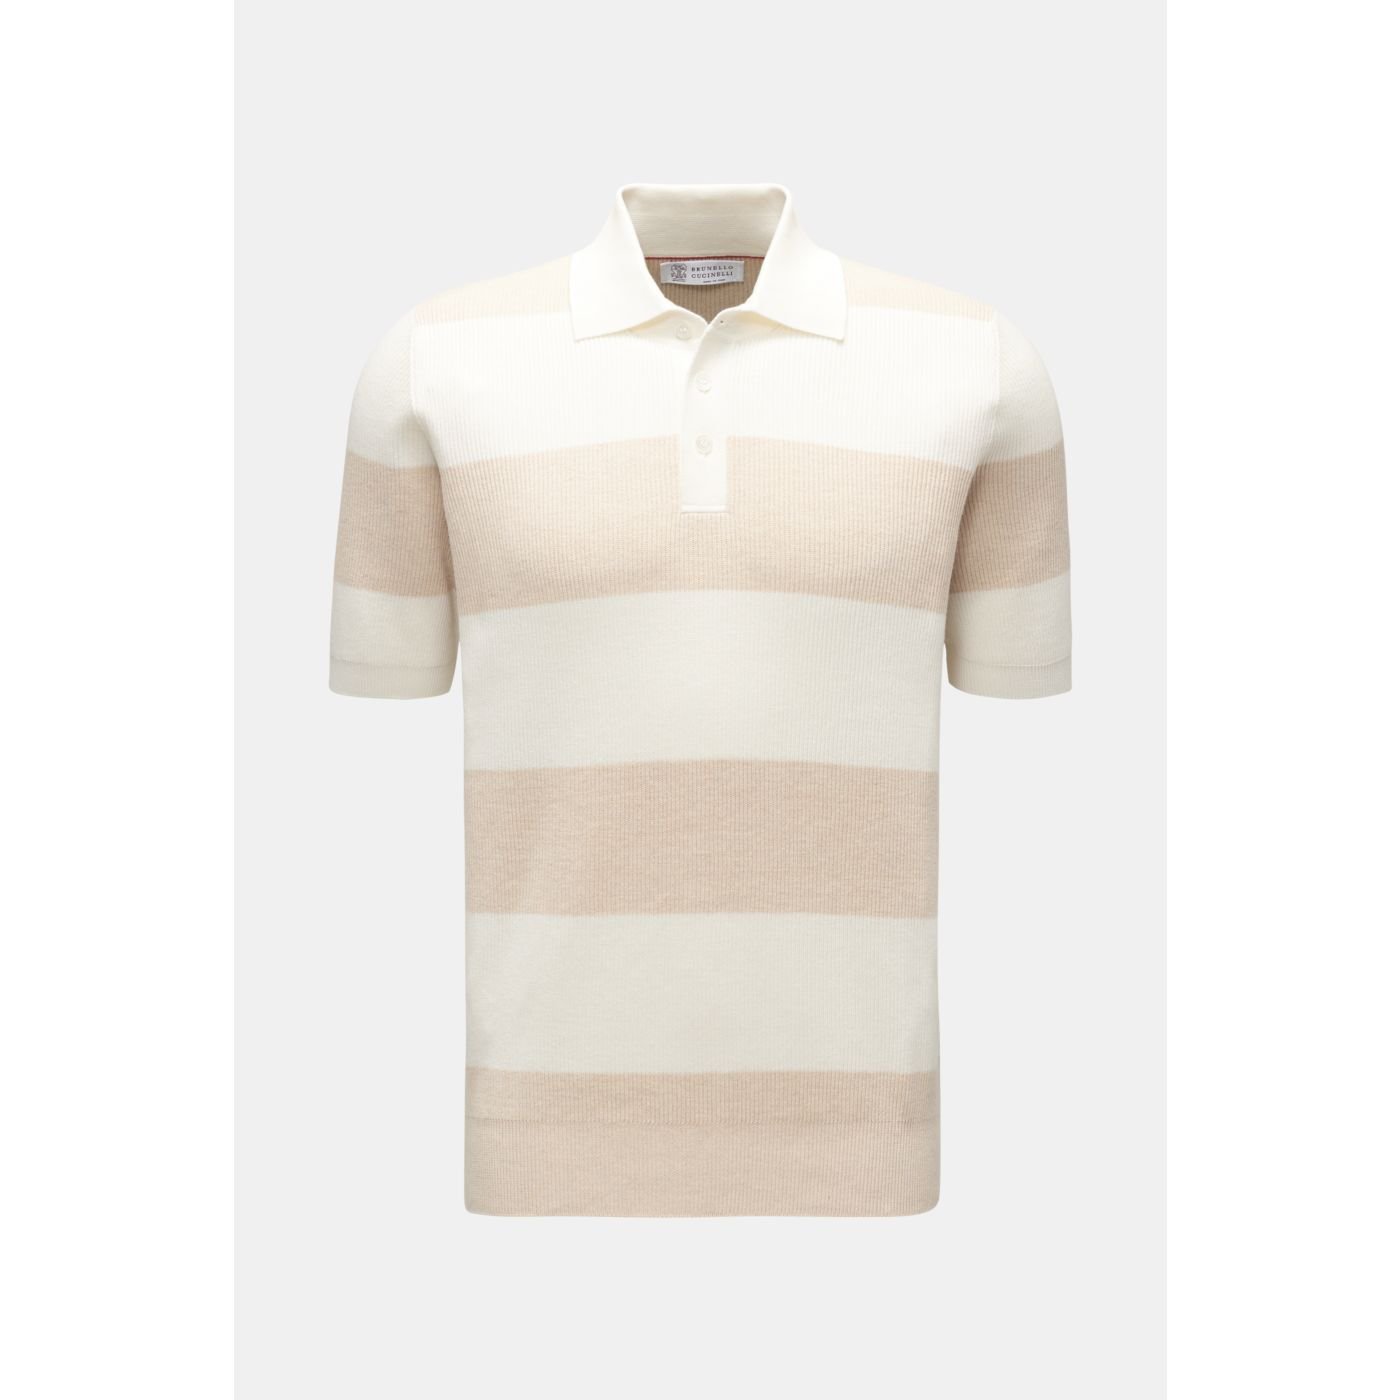 BRUNELLO CUCINELLI short sleeve knit polo beige/cream striped | BRAUN ...